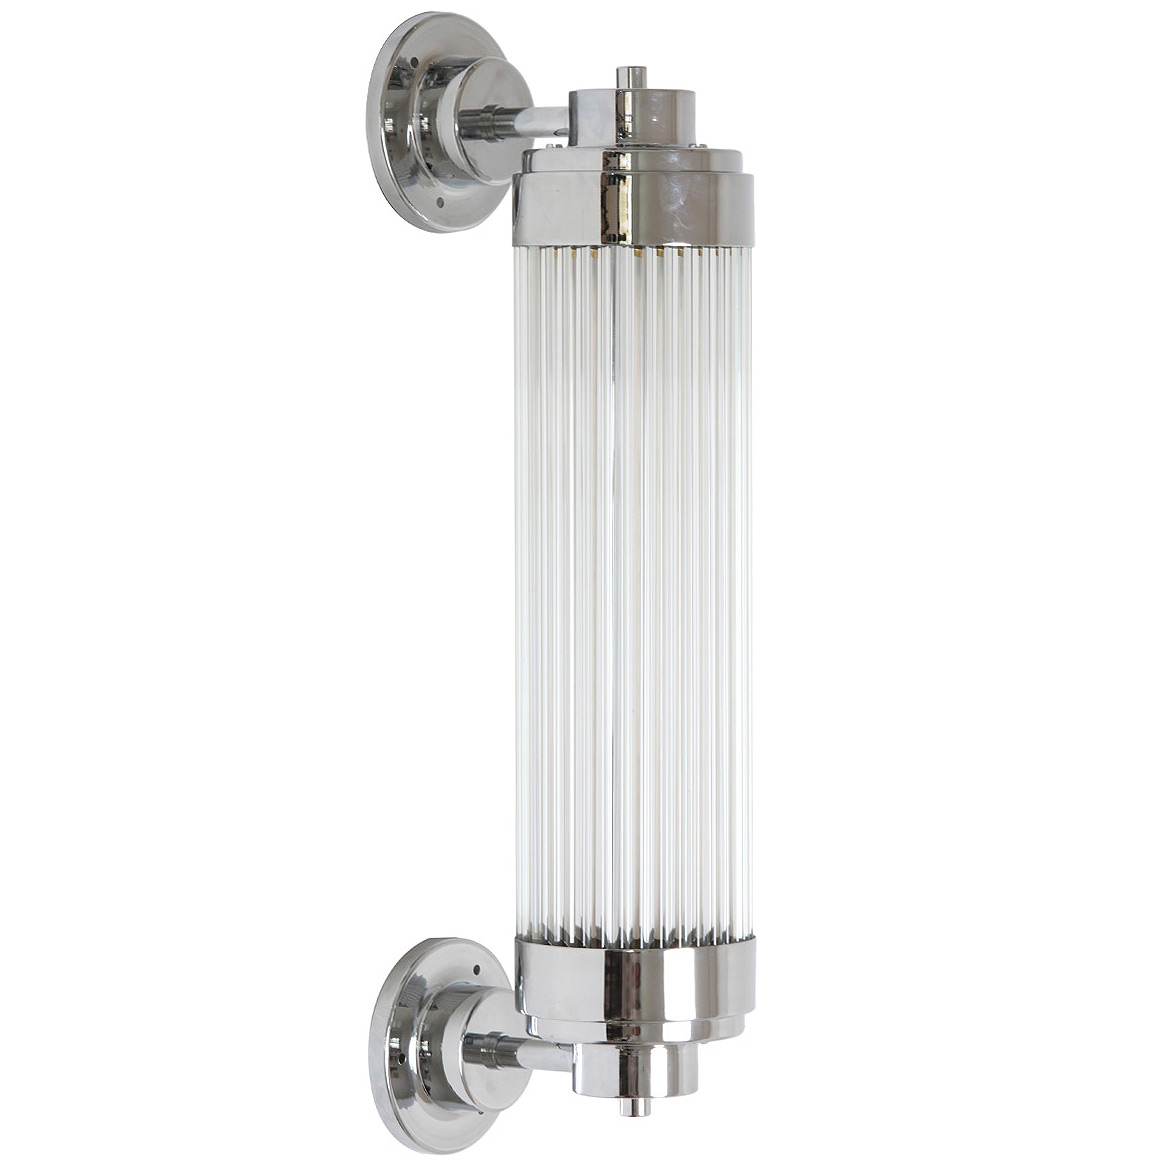 Exklusive LED-Wandleuchte, ideal für Badezimmer-Spiegel: LED-Wandleuchte mit Glasstäbchen-Mantel im Art Déco Stil, hier in Messing verchromt